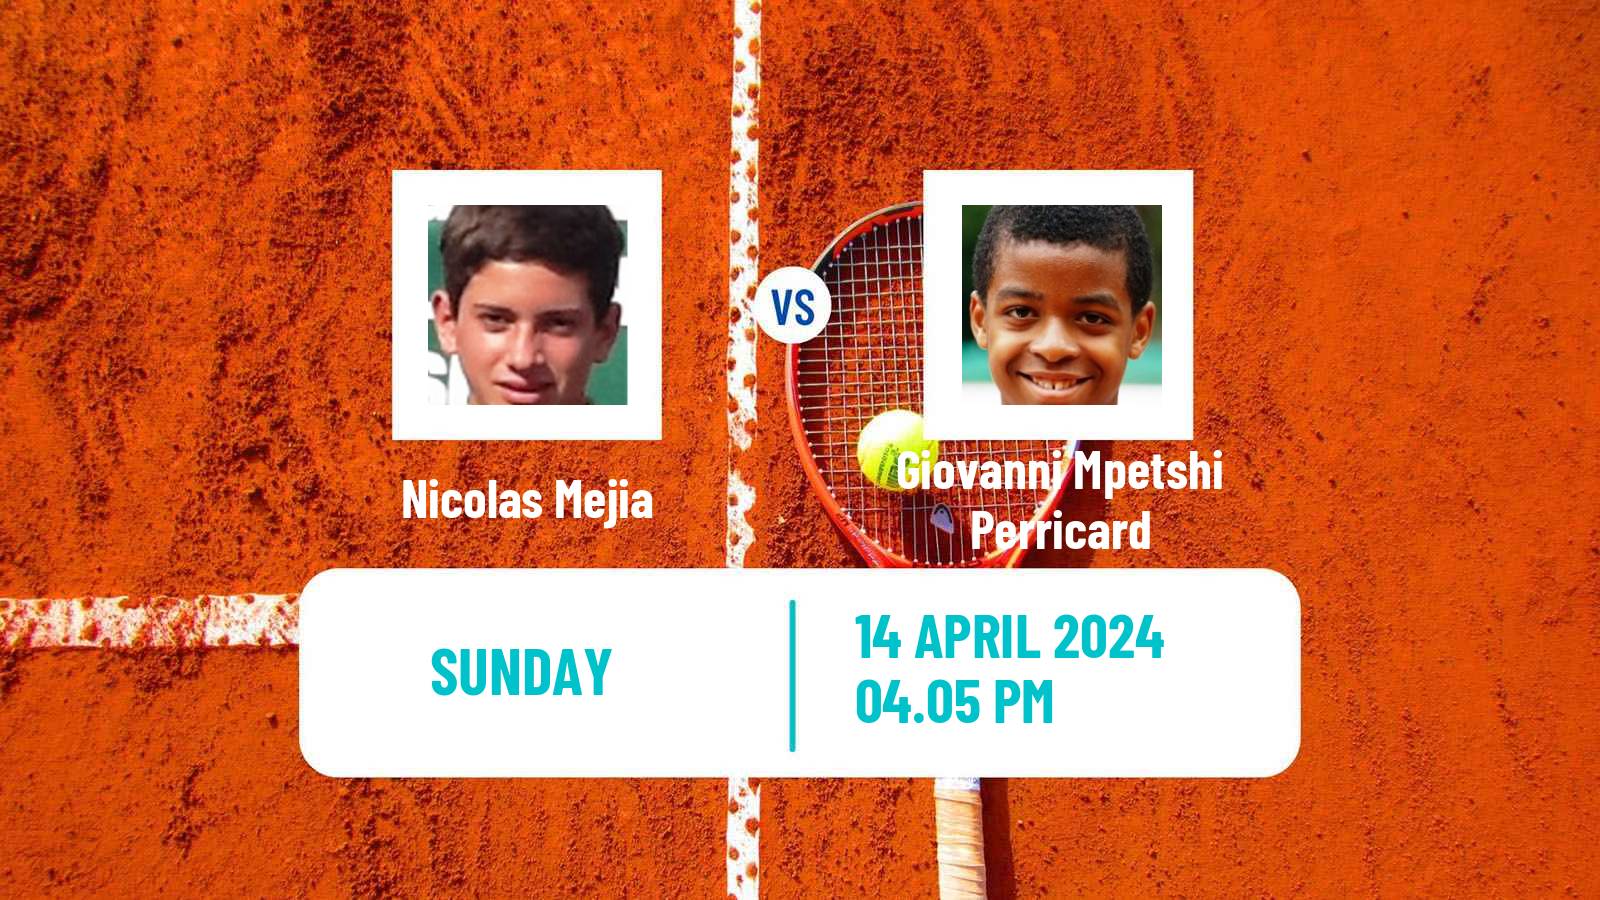 Tennis Morelos Challenger Men Nicolas Mejia - Giovanni Mpetshi Perricard